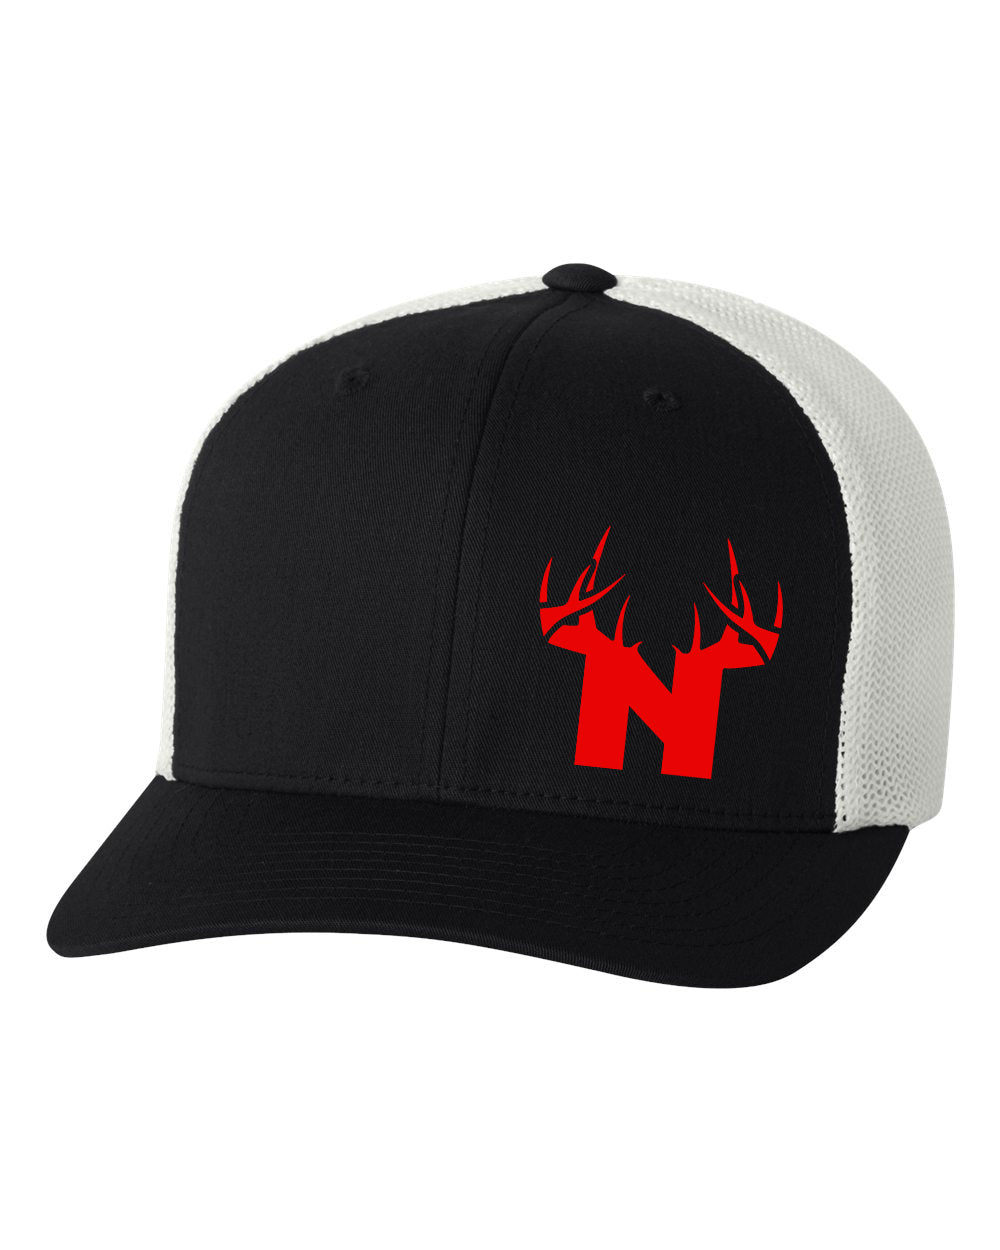 6 Pack of Black/White FlexFit Fitted BoNE Hat – Bucks of Nebraska